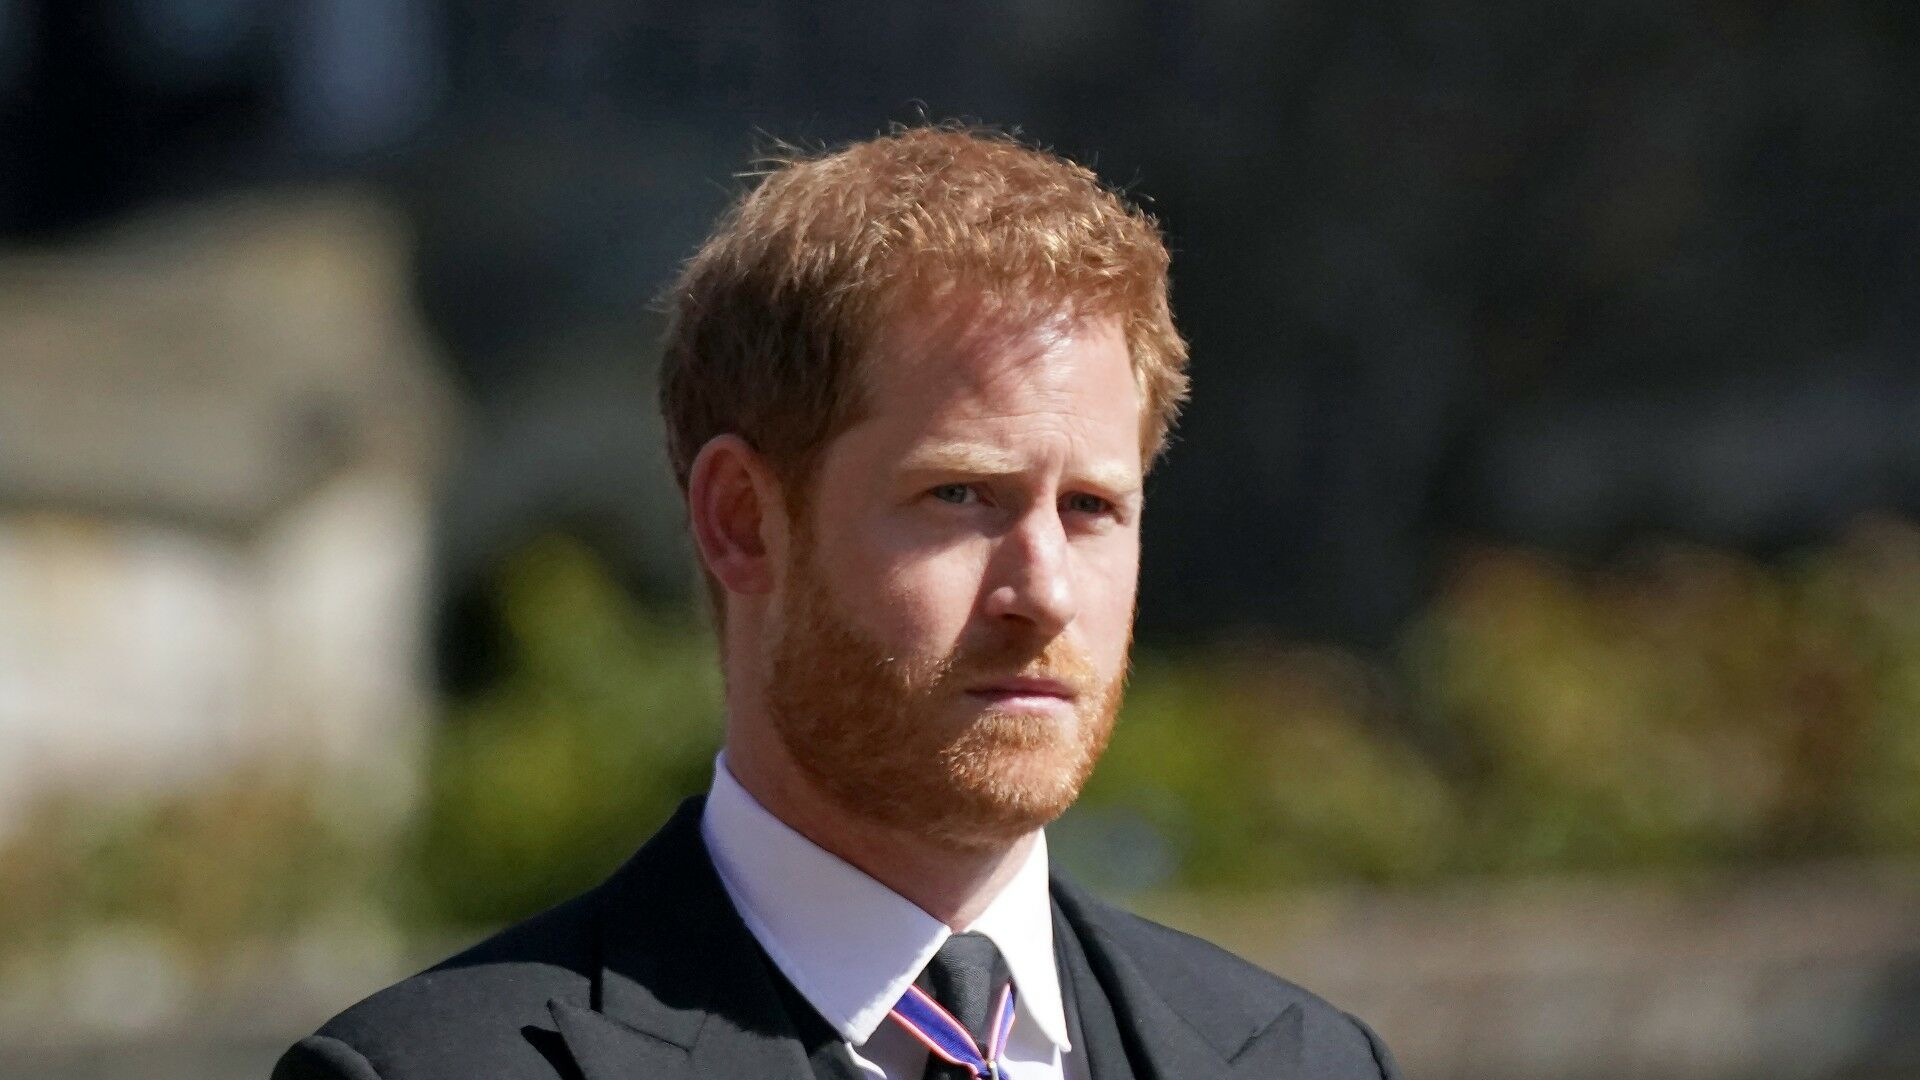 Prince Harry : Déjà 40 000 signatures pour une pétition proposant de lui retirer ses titres royaux